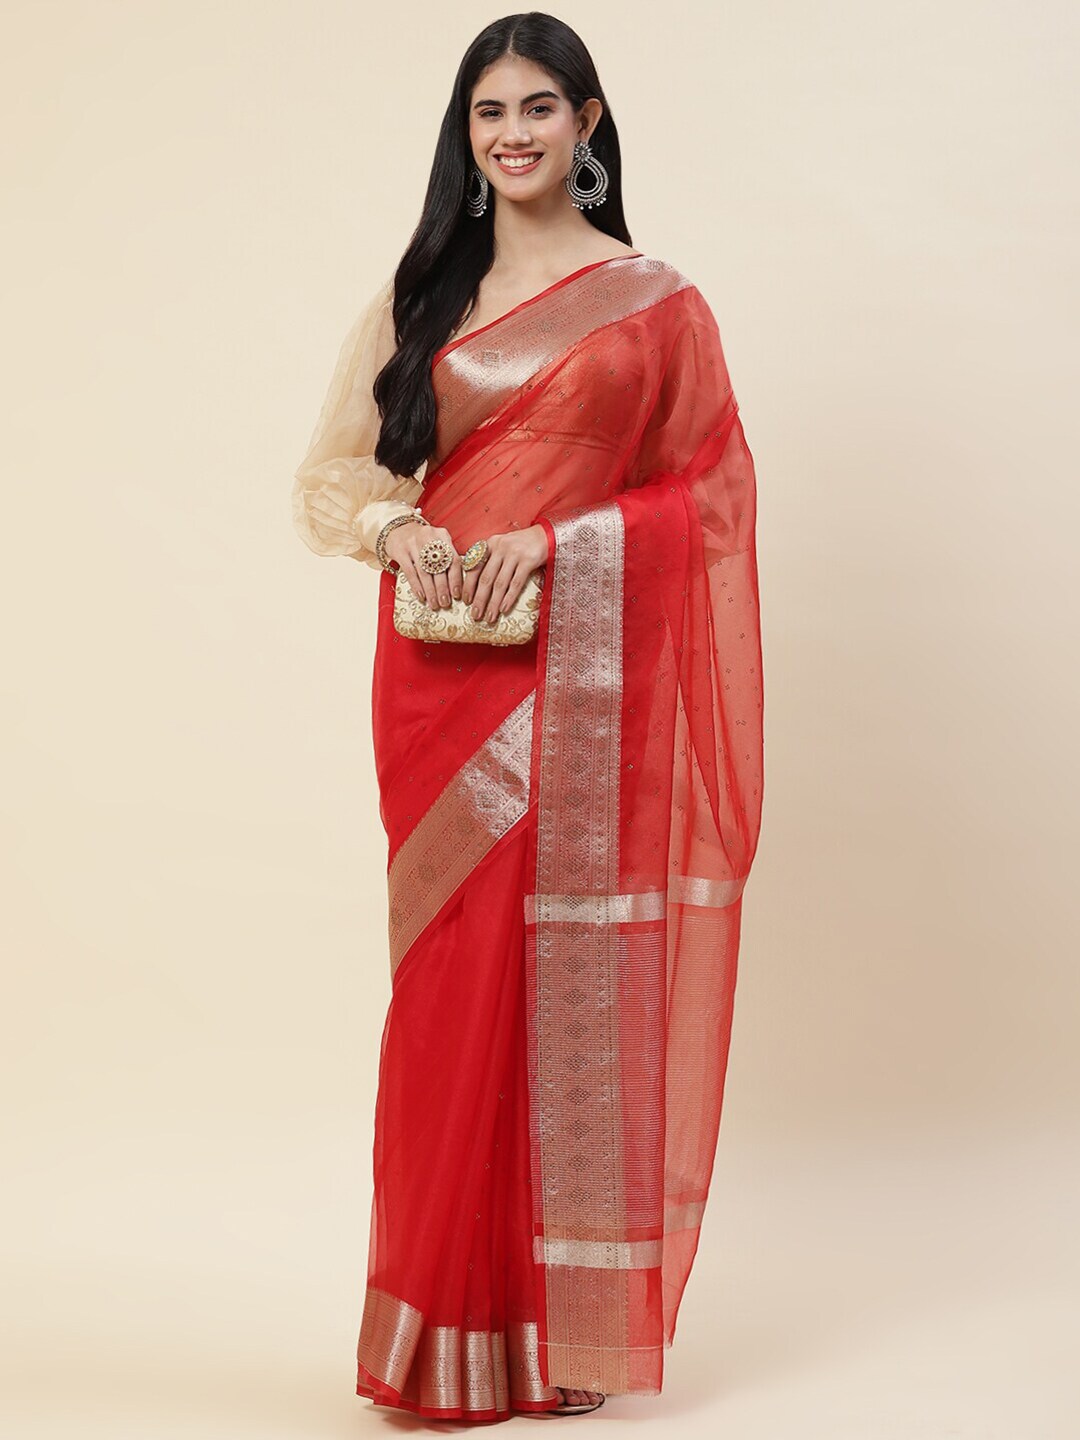 Meena Bazaar – Red Net Saree with Leaf Bootas & Gold Borde… | Flickr